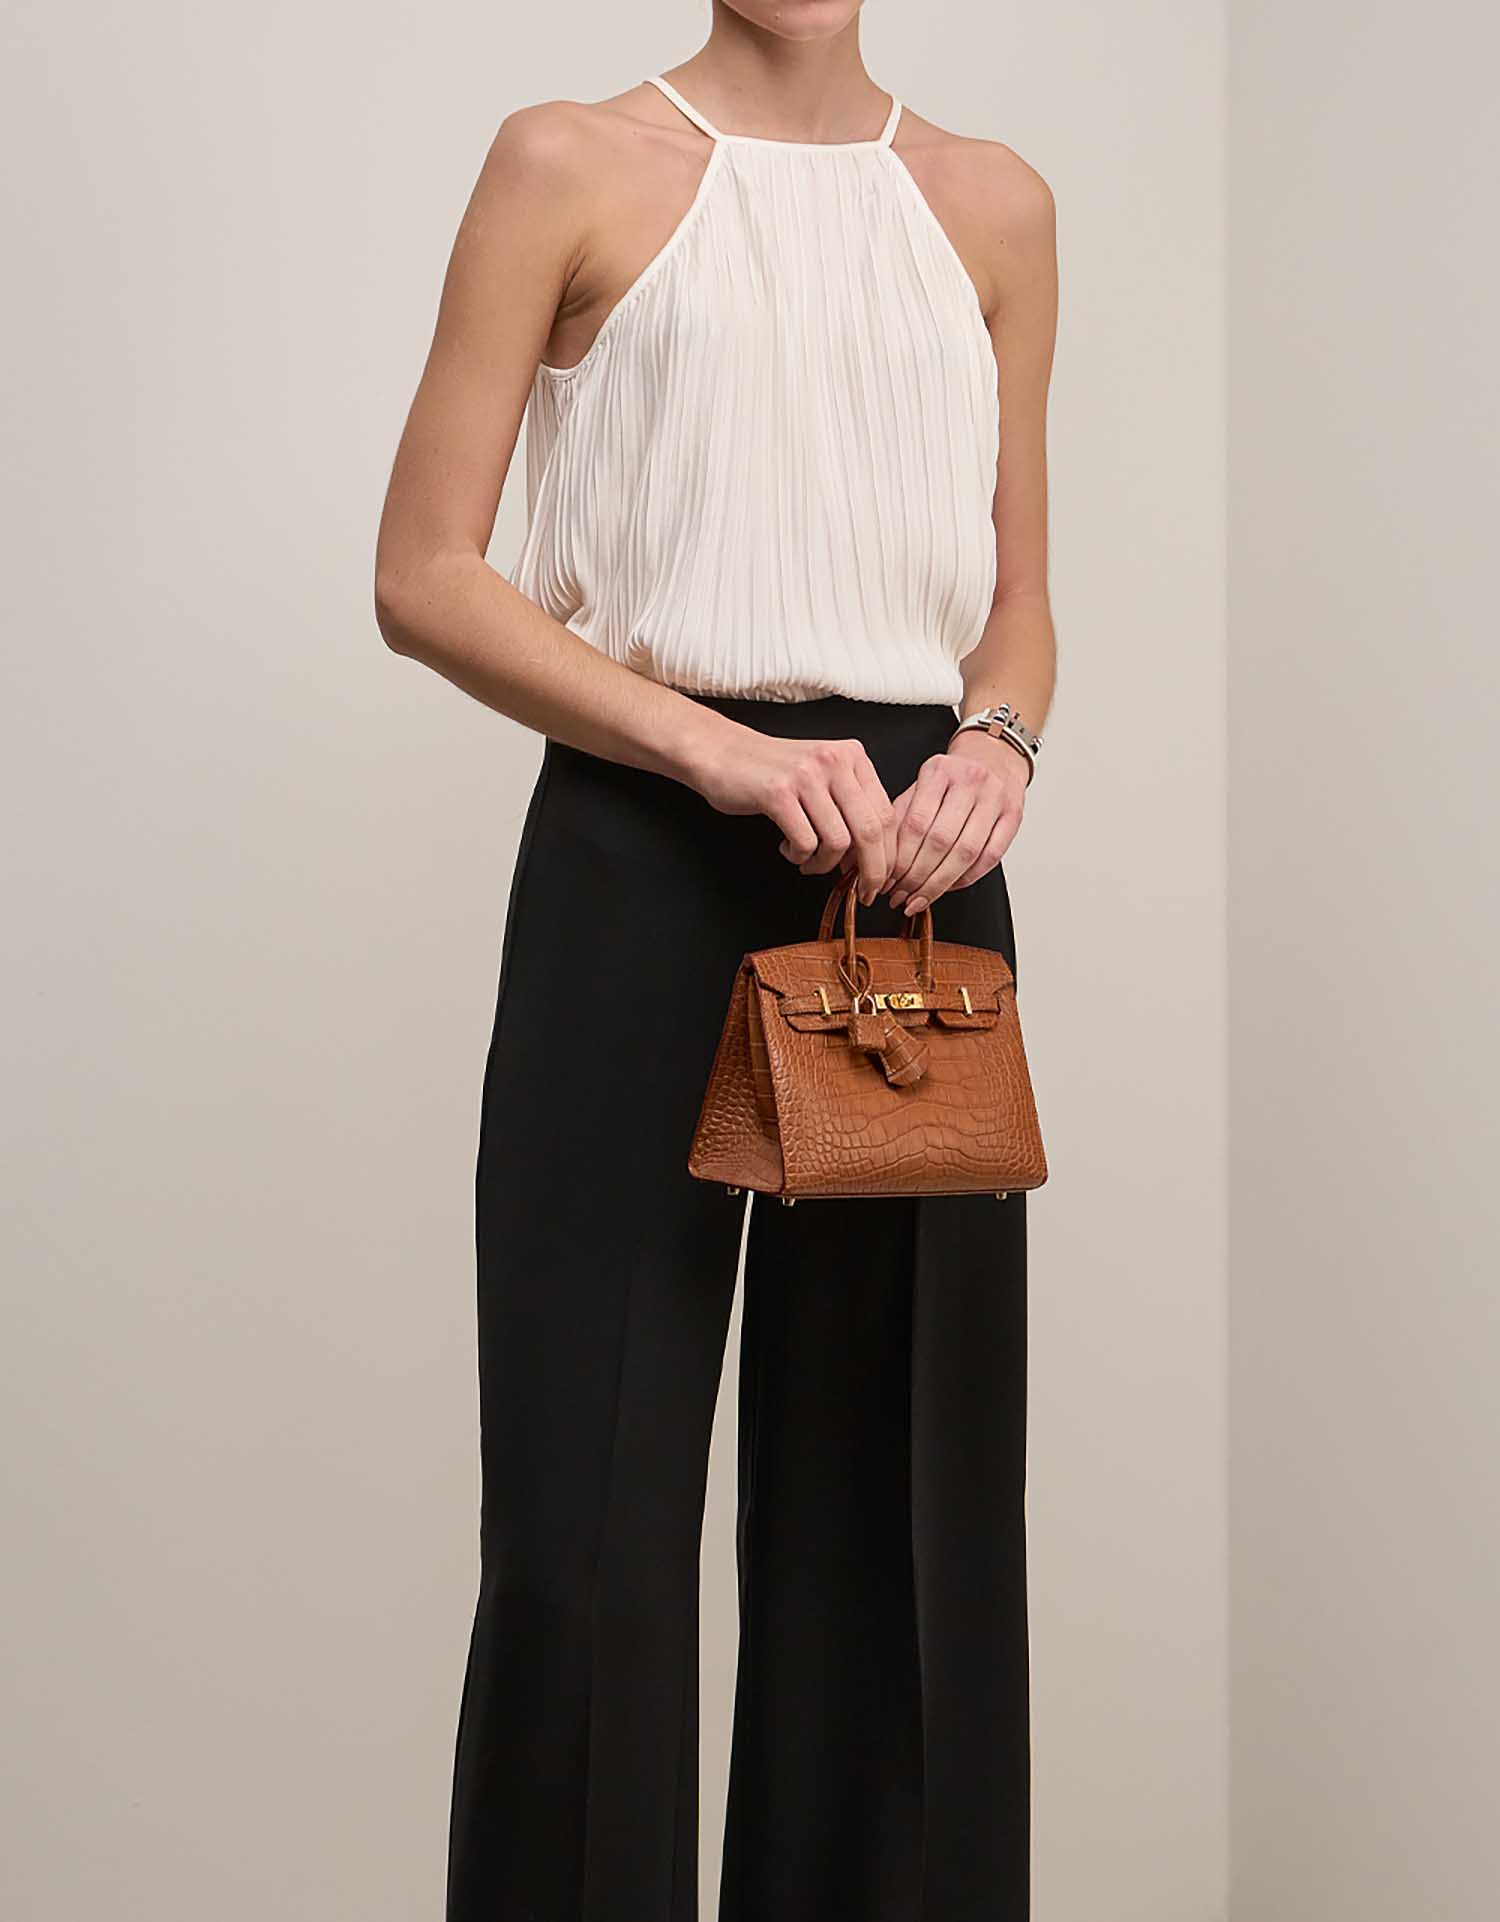 Hermès Birkin 20 Gold on Model | Sell your designer bag on Saclab.com